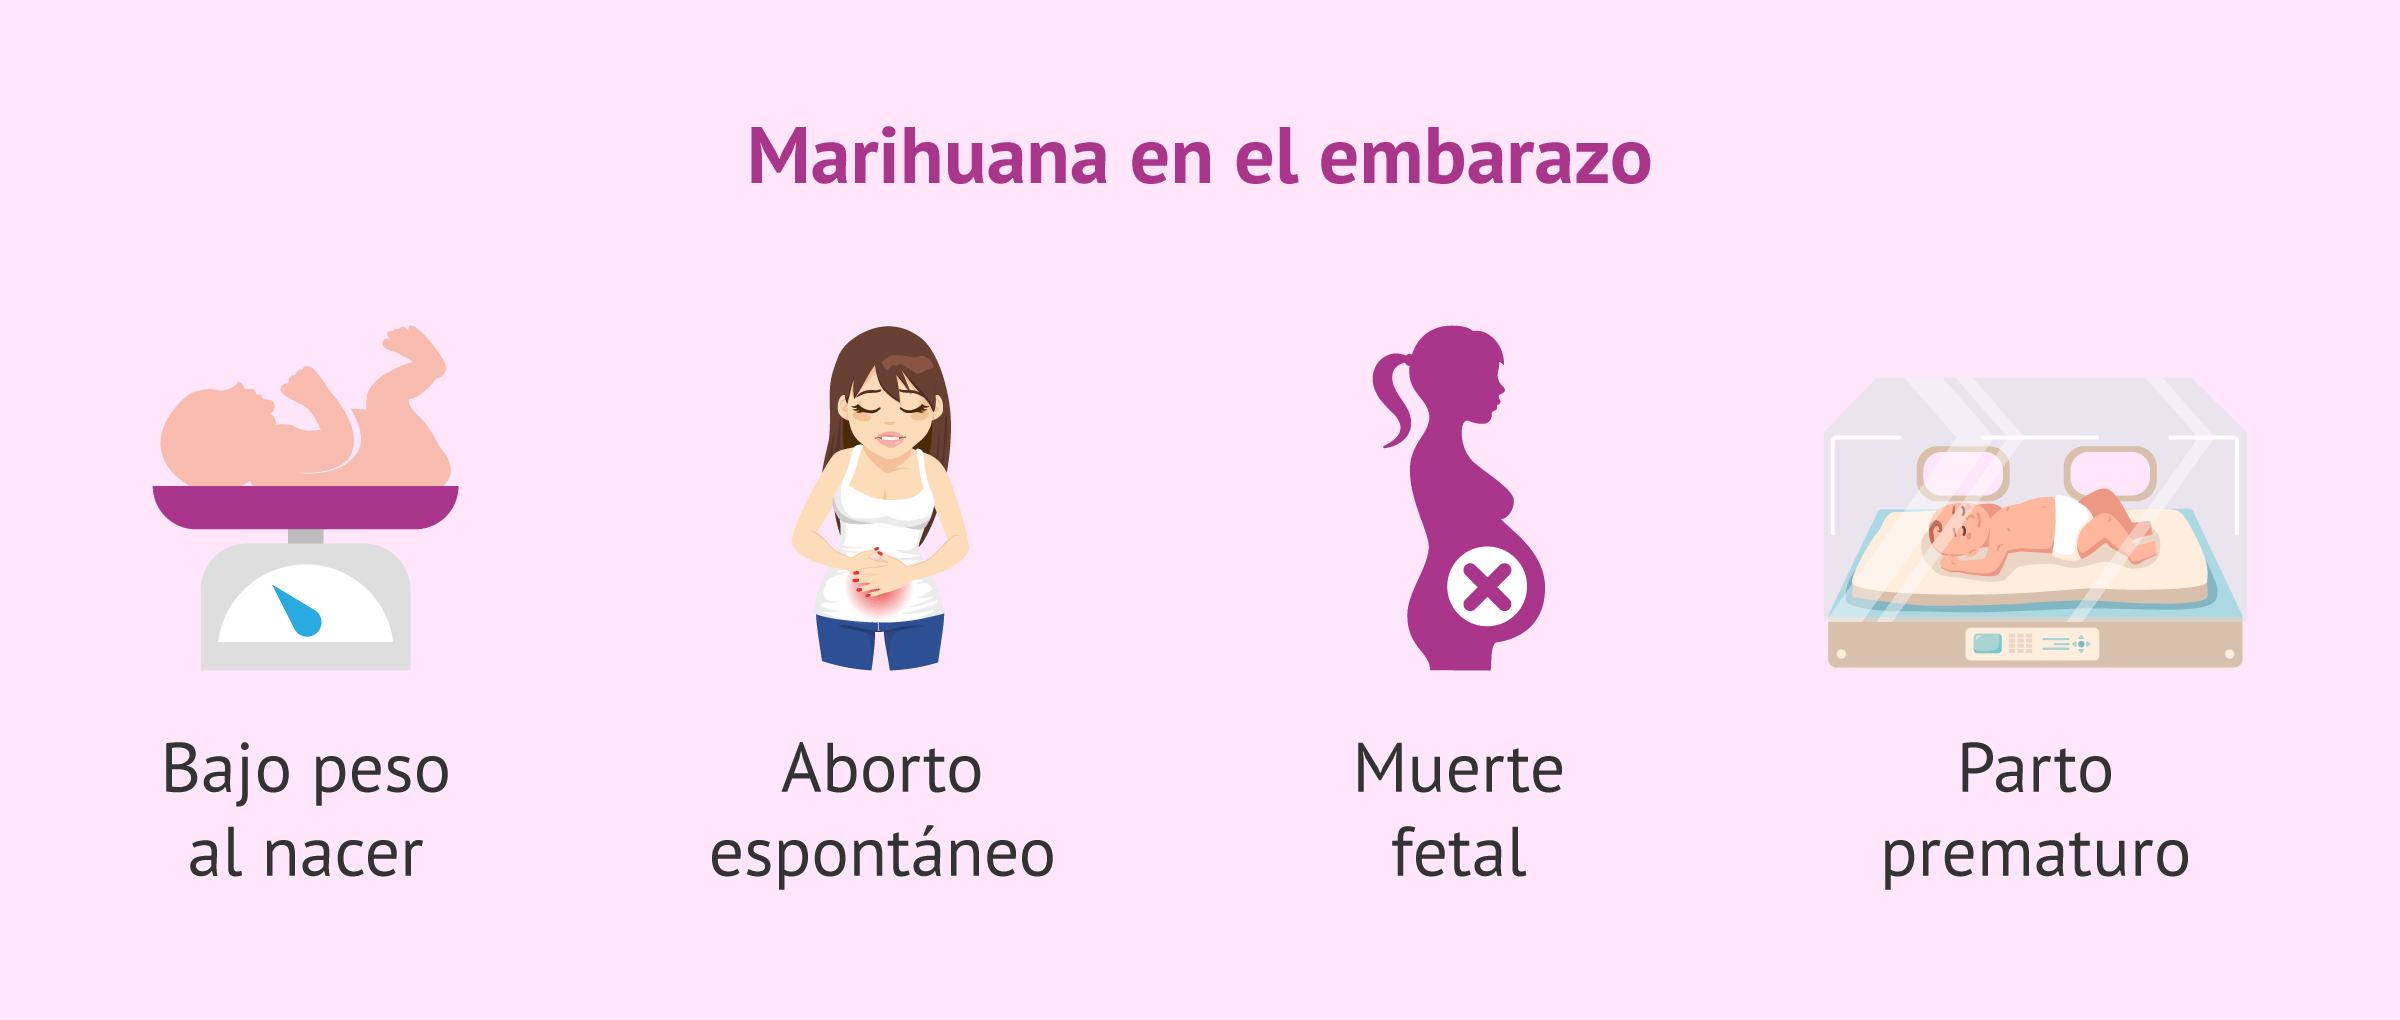 Consumo de marihuana en el embarazo